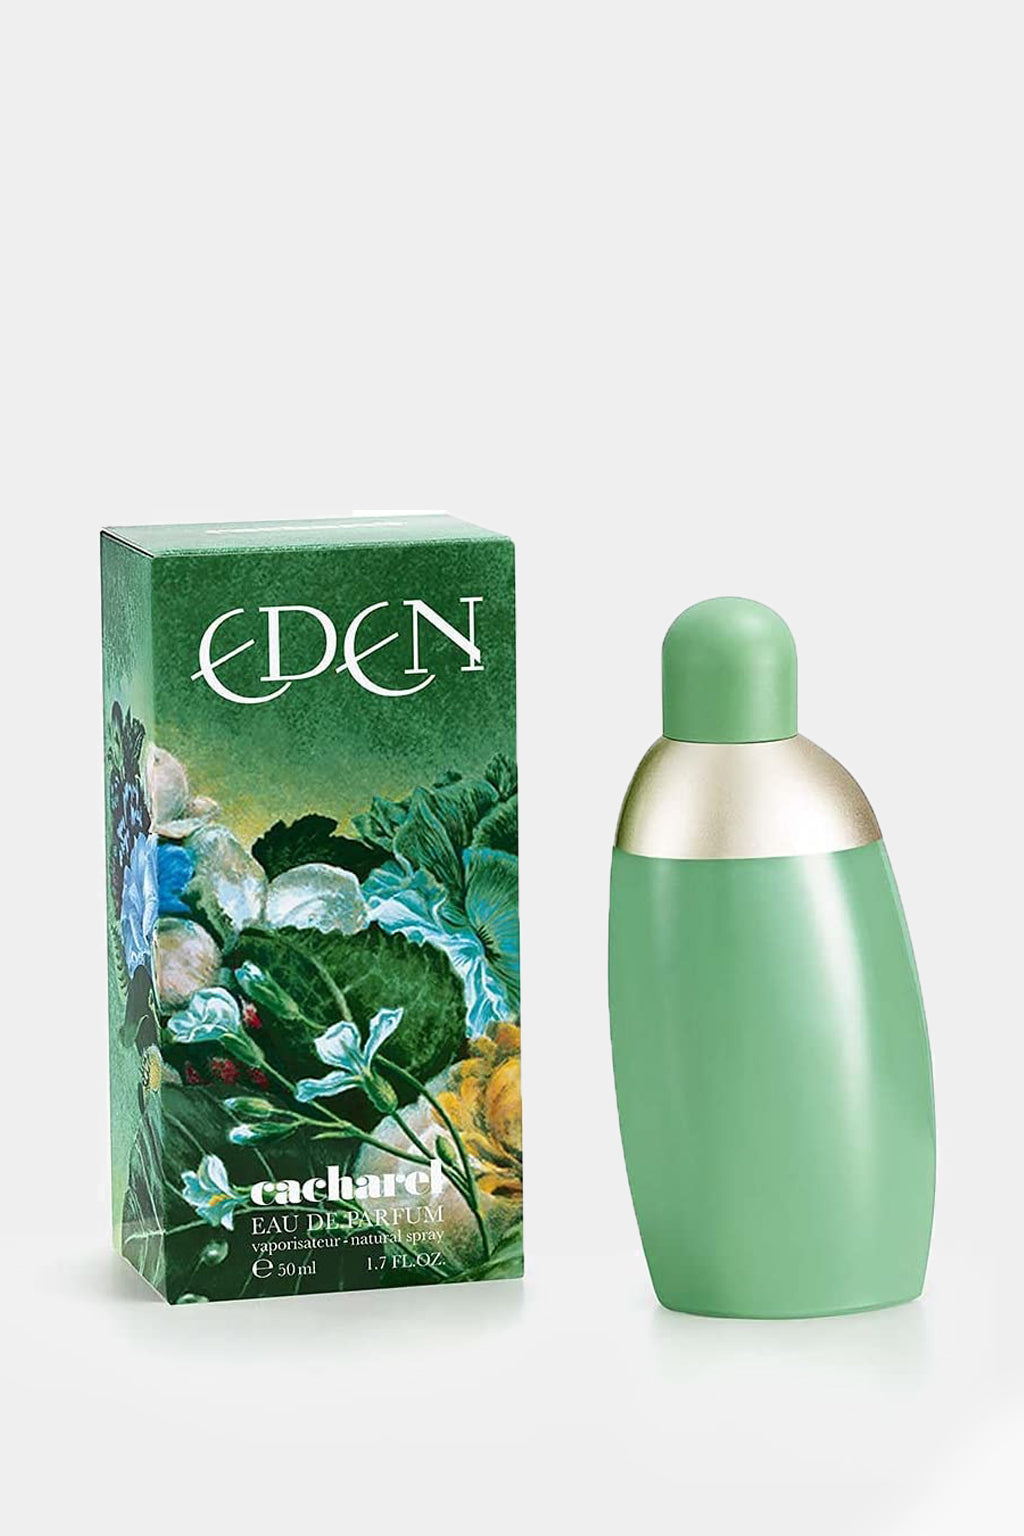 Eden - Eden By Cacharel Eau de Parfum